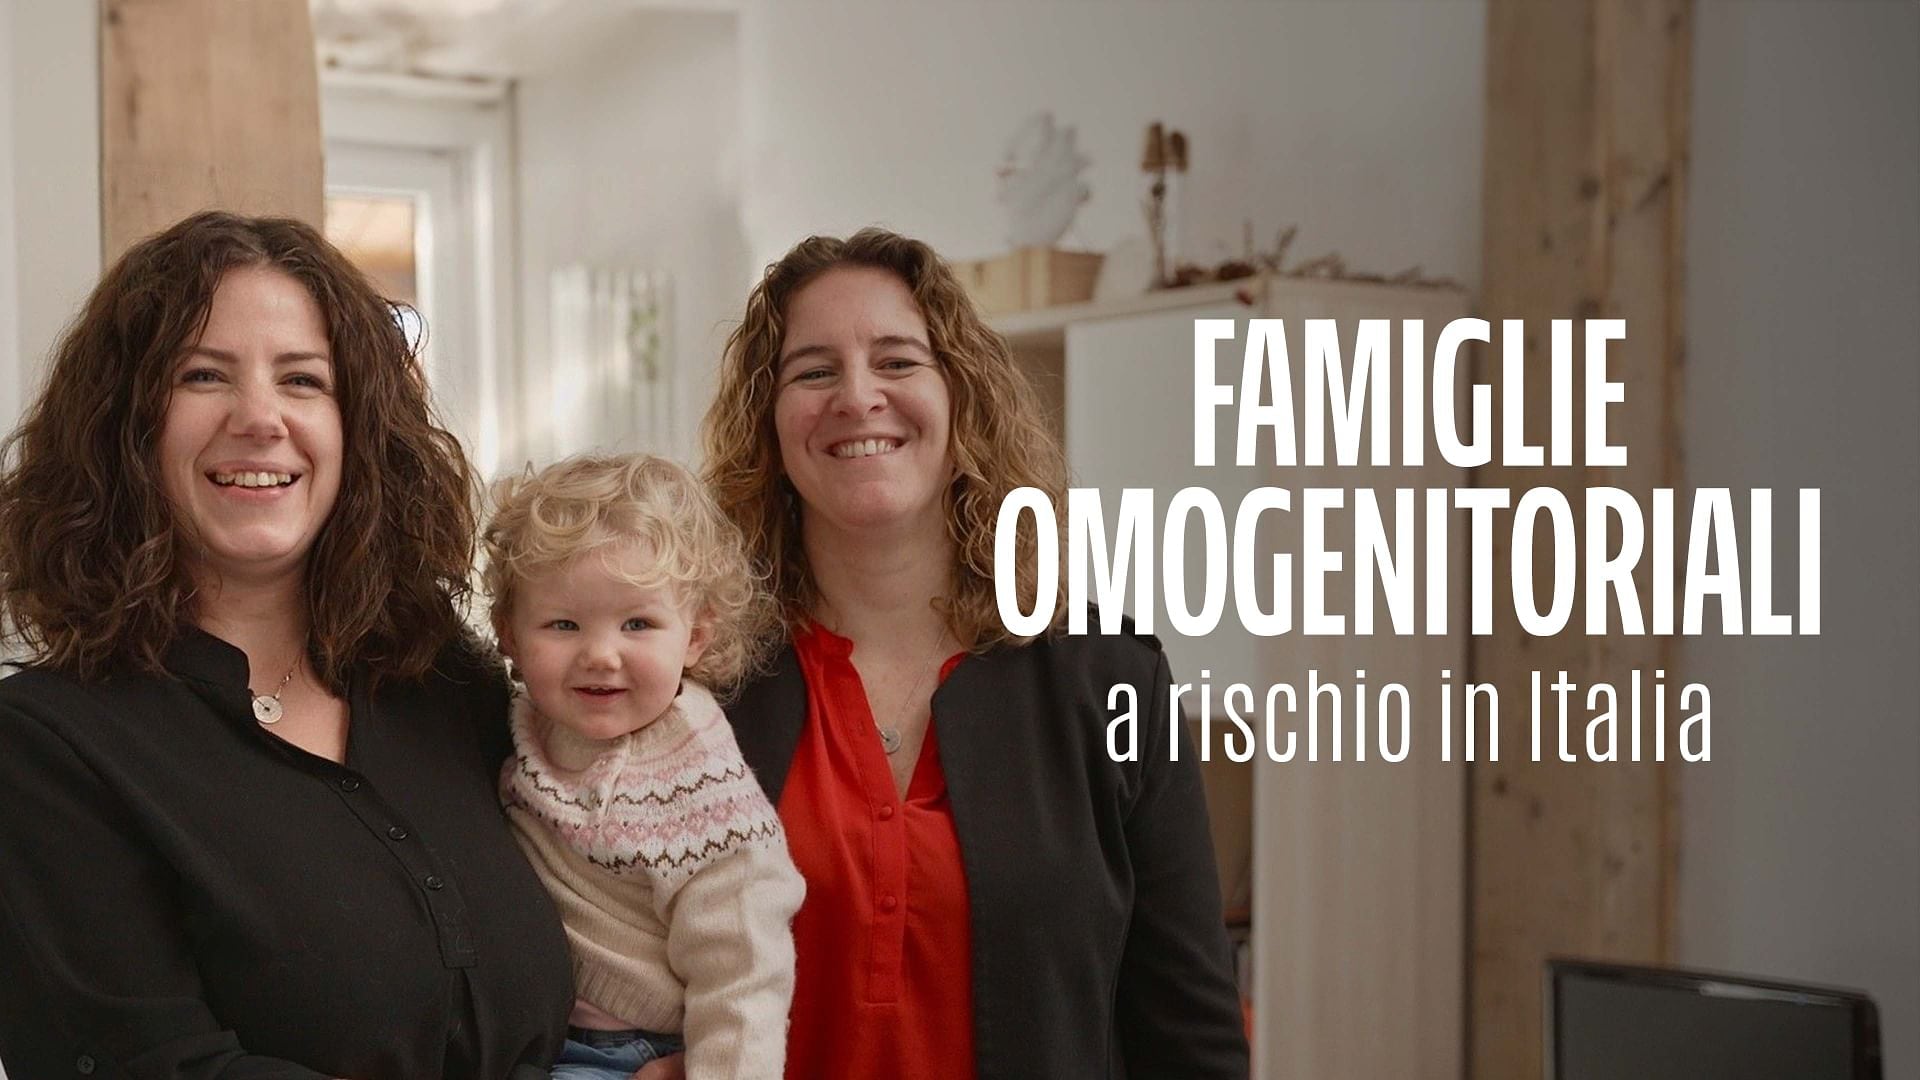 Re: sguardi sulla società - Famiglie omogenitoriali a rischio in Italia